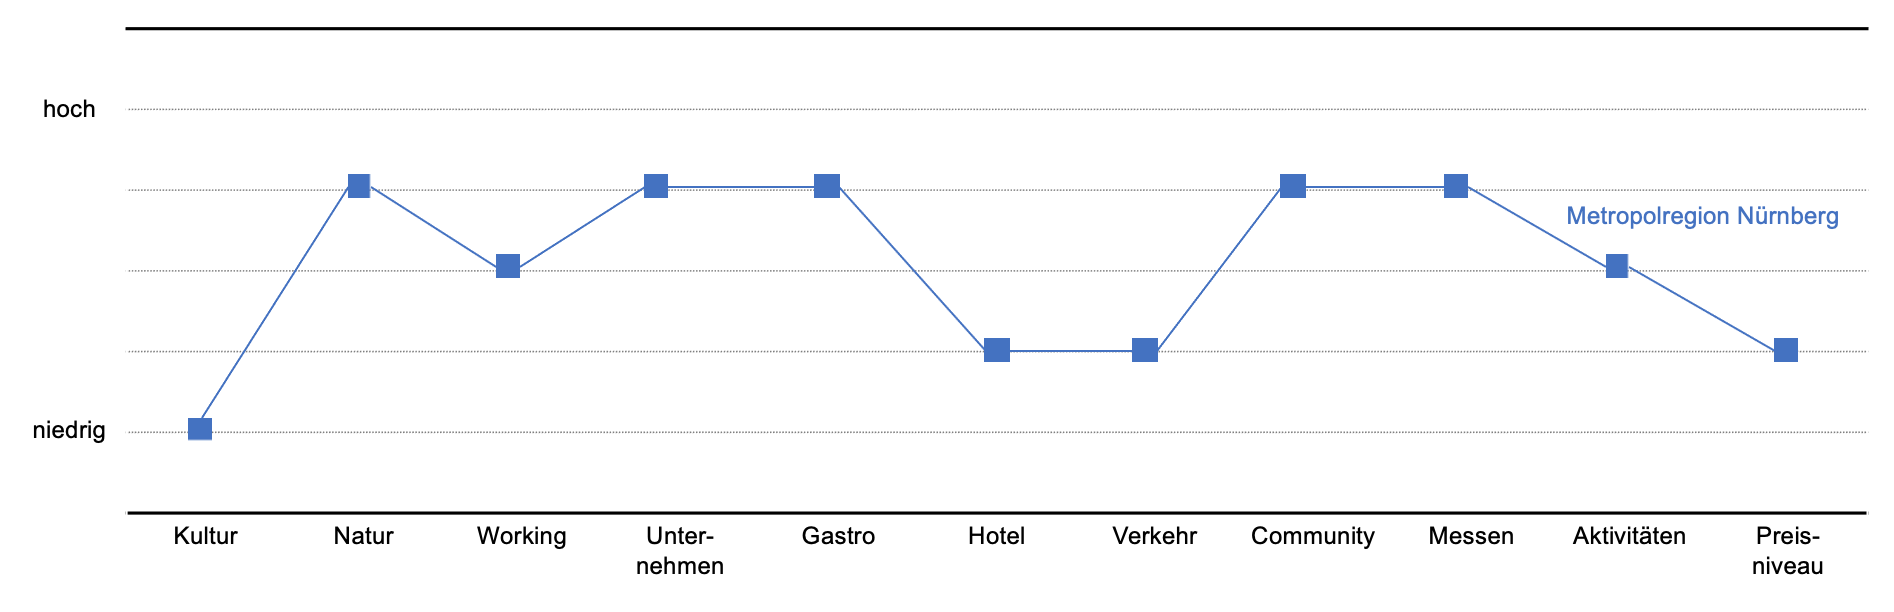 Value Curve der Metropolregion Nürnberg